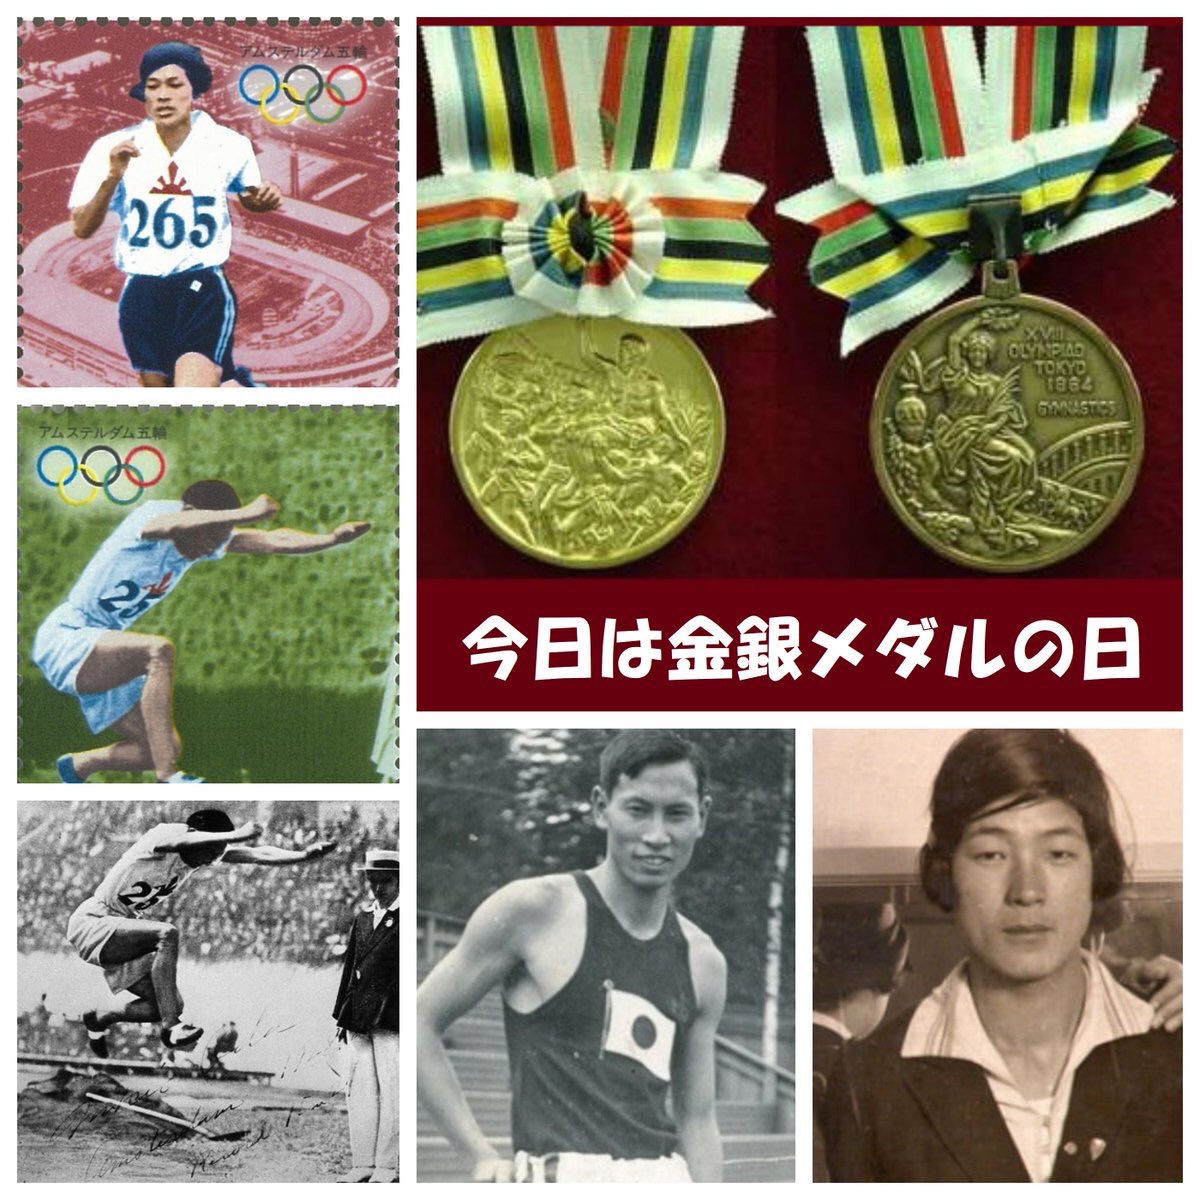 久延毘古 陶 皇紀ニ六八二年令和四年神無月神在月 金銀の日 1928年8月2日 アムステルダムオリンピックで 陸上三段跳びの織田幹雄が日本人初の金メダル 陸上800mの人見絹枝が日本人女性初のメダルとなる銀メダルを獲得した T Co